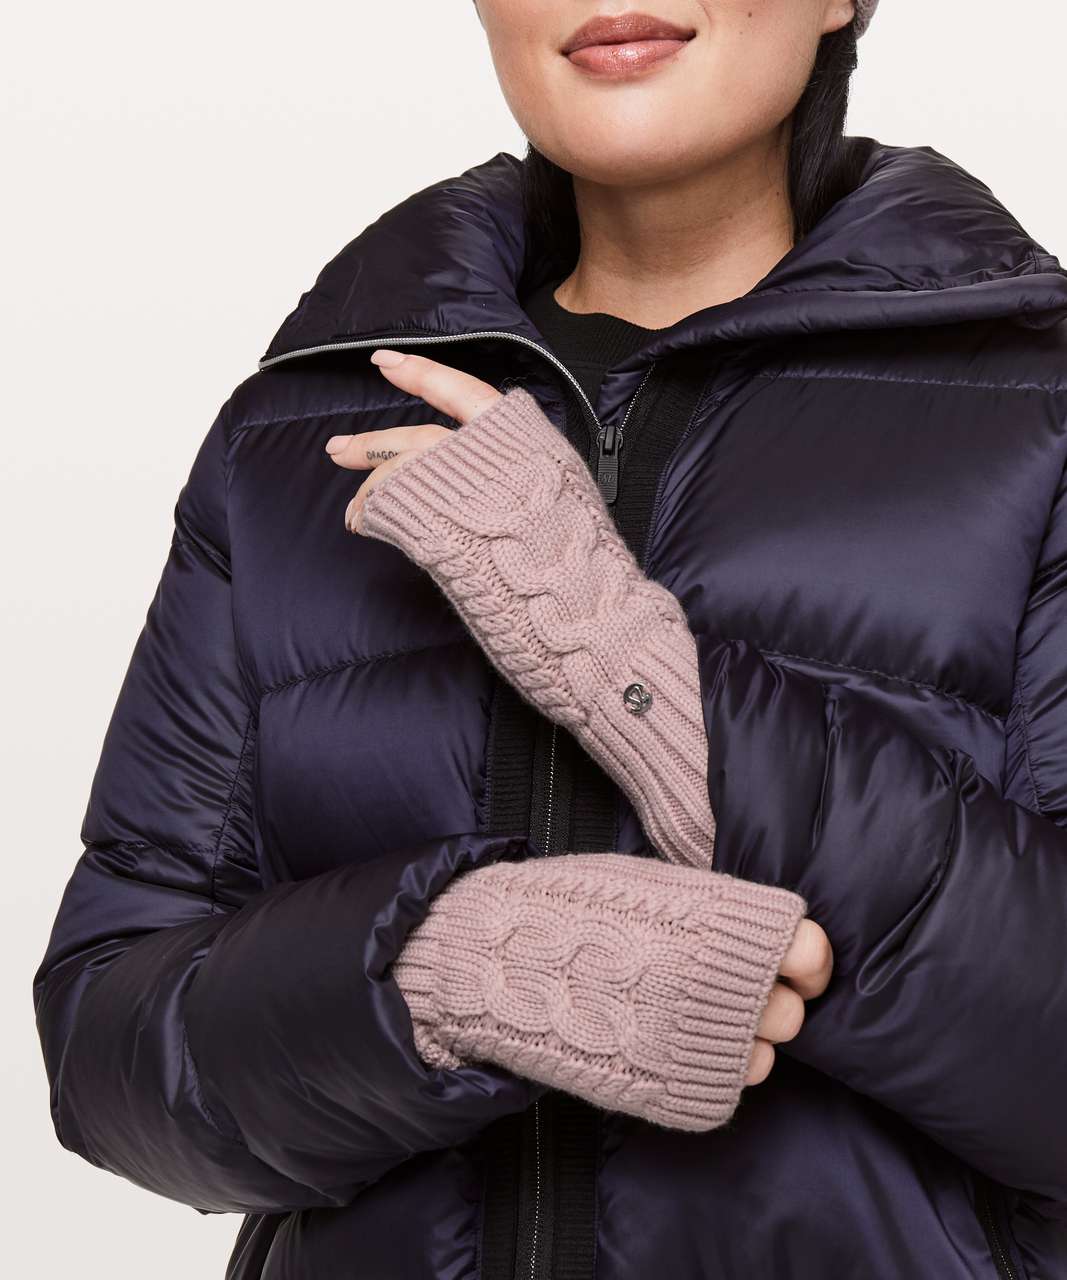 Women's fingerless gloves BERRY-BLACK